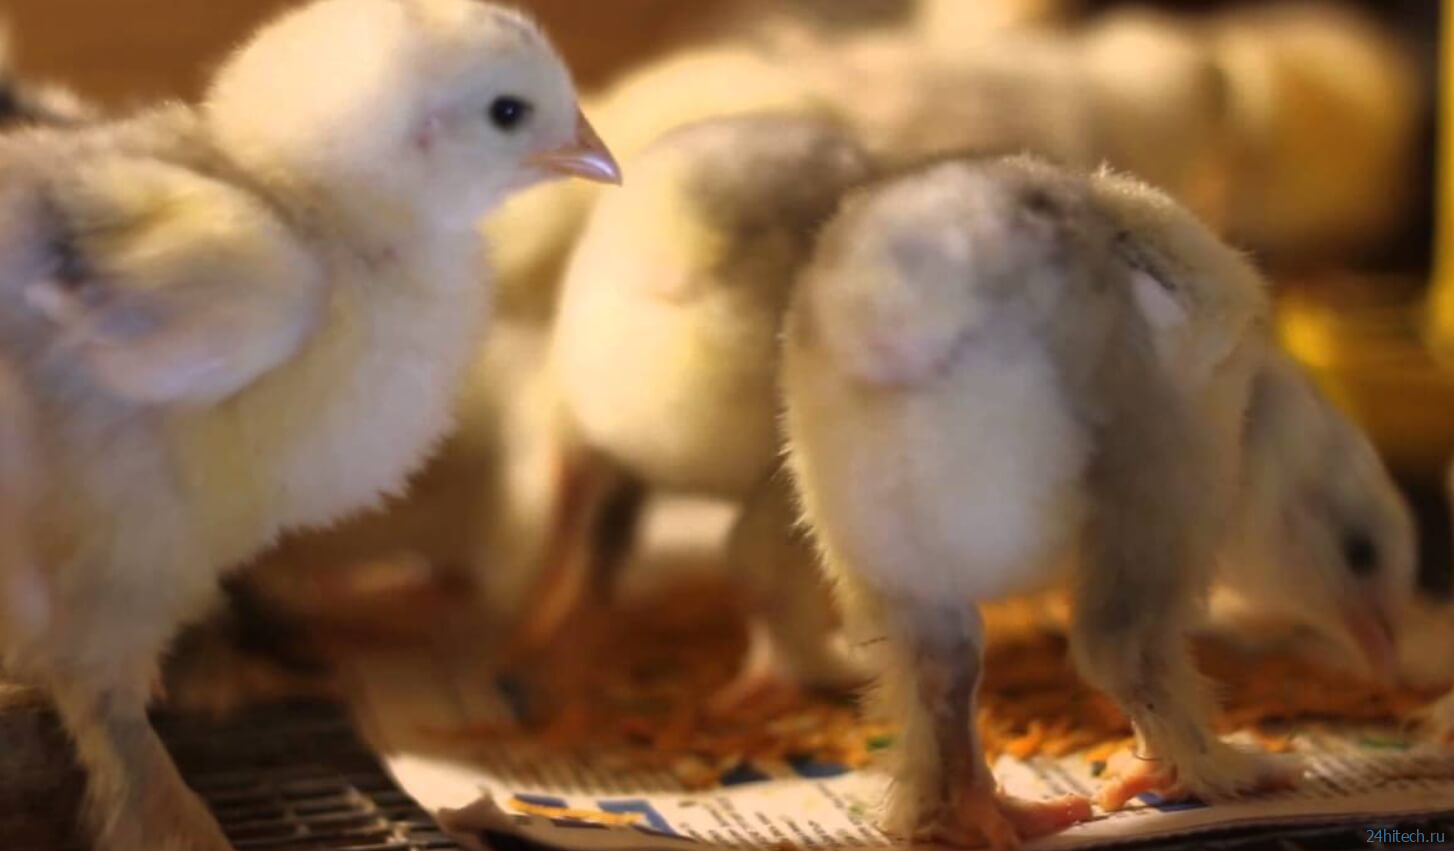 Как производится мясо курицы и почему оно становится дороже говядины?